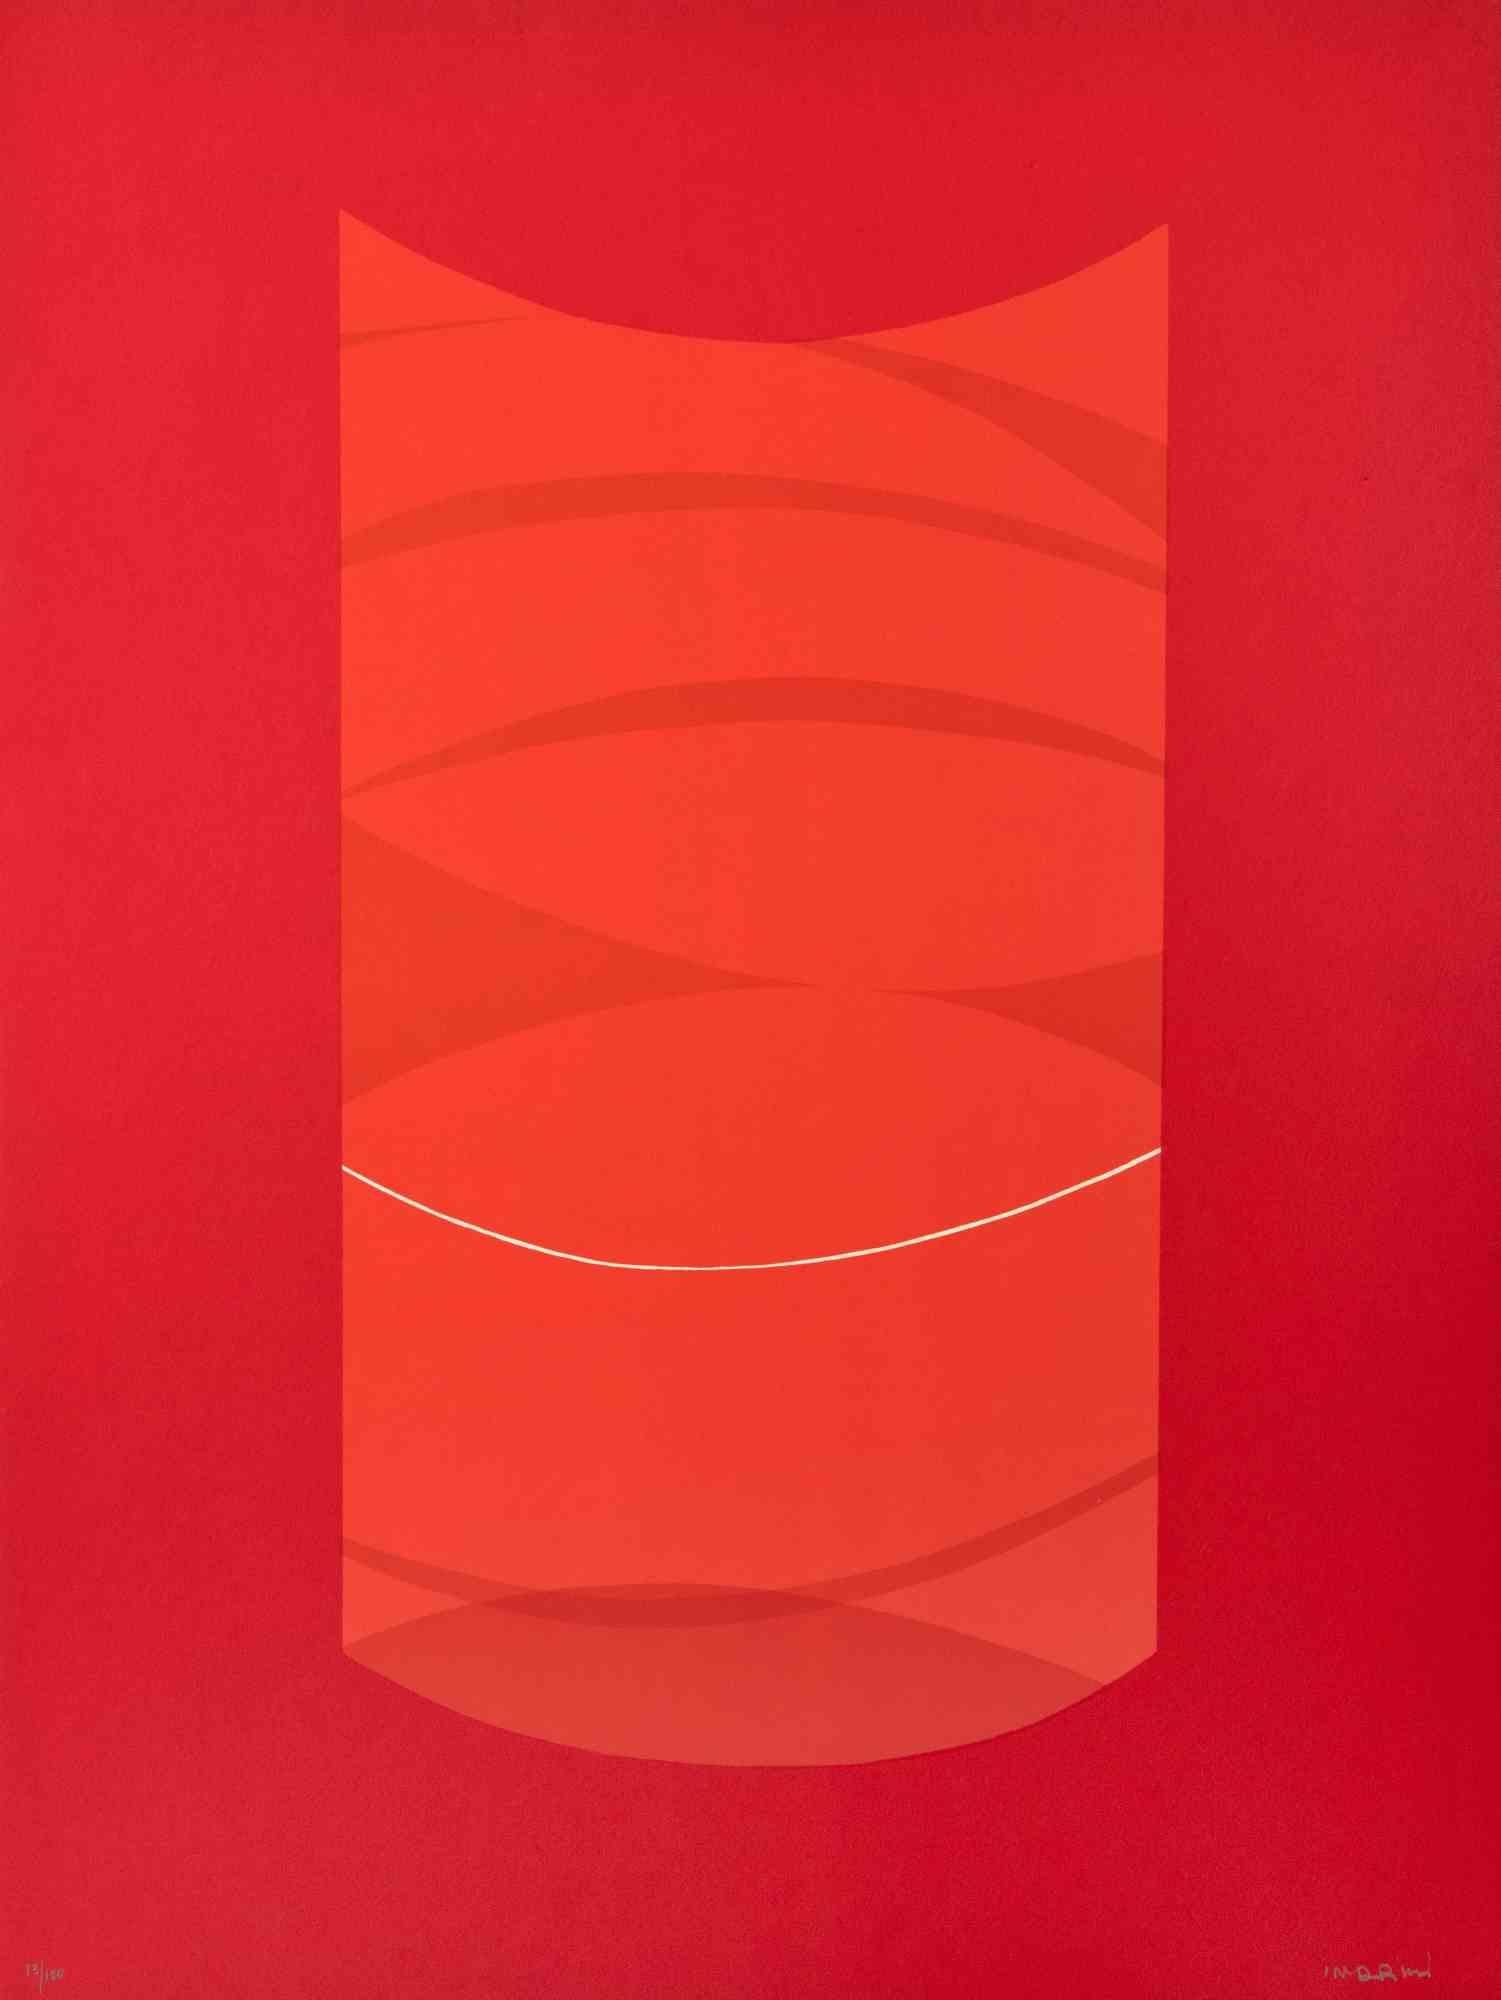 Red One est une œuvre d'art contemporain réalisée par Lorenzo Indrimi dans les années 1970.

Lithographie en couleurs mélangées.

Signé à la main et daté dans la marge inférieure.

Edition de 73/100